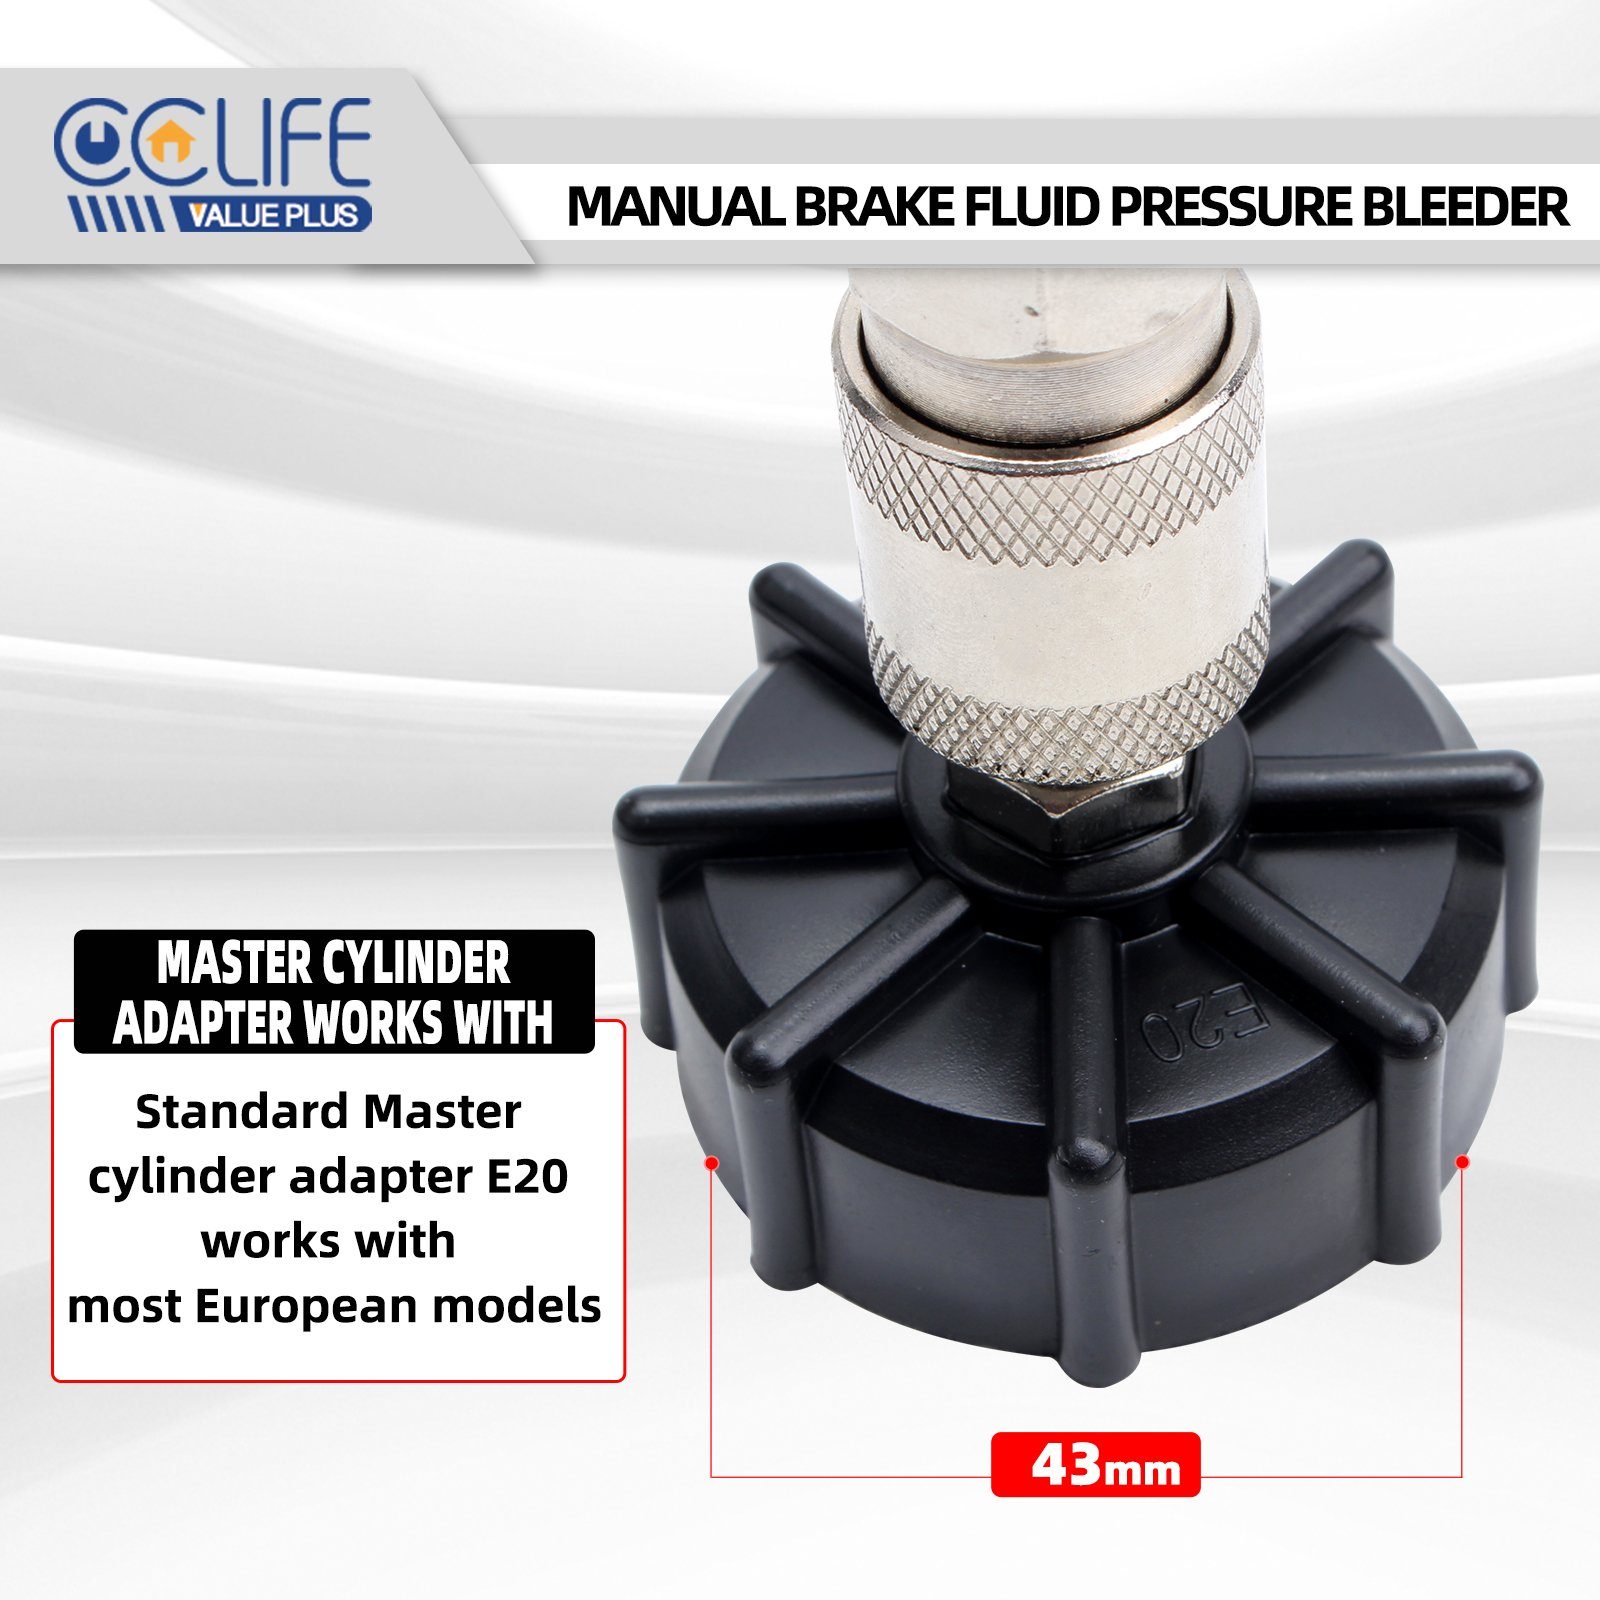 CCLIFE Bremsscheiben-Richtwerkzeug Bremsenentlüfter Bremsflüssigkeit Bremsenentlüftungsgerät 2L